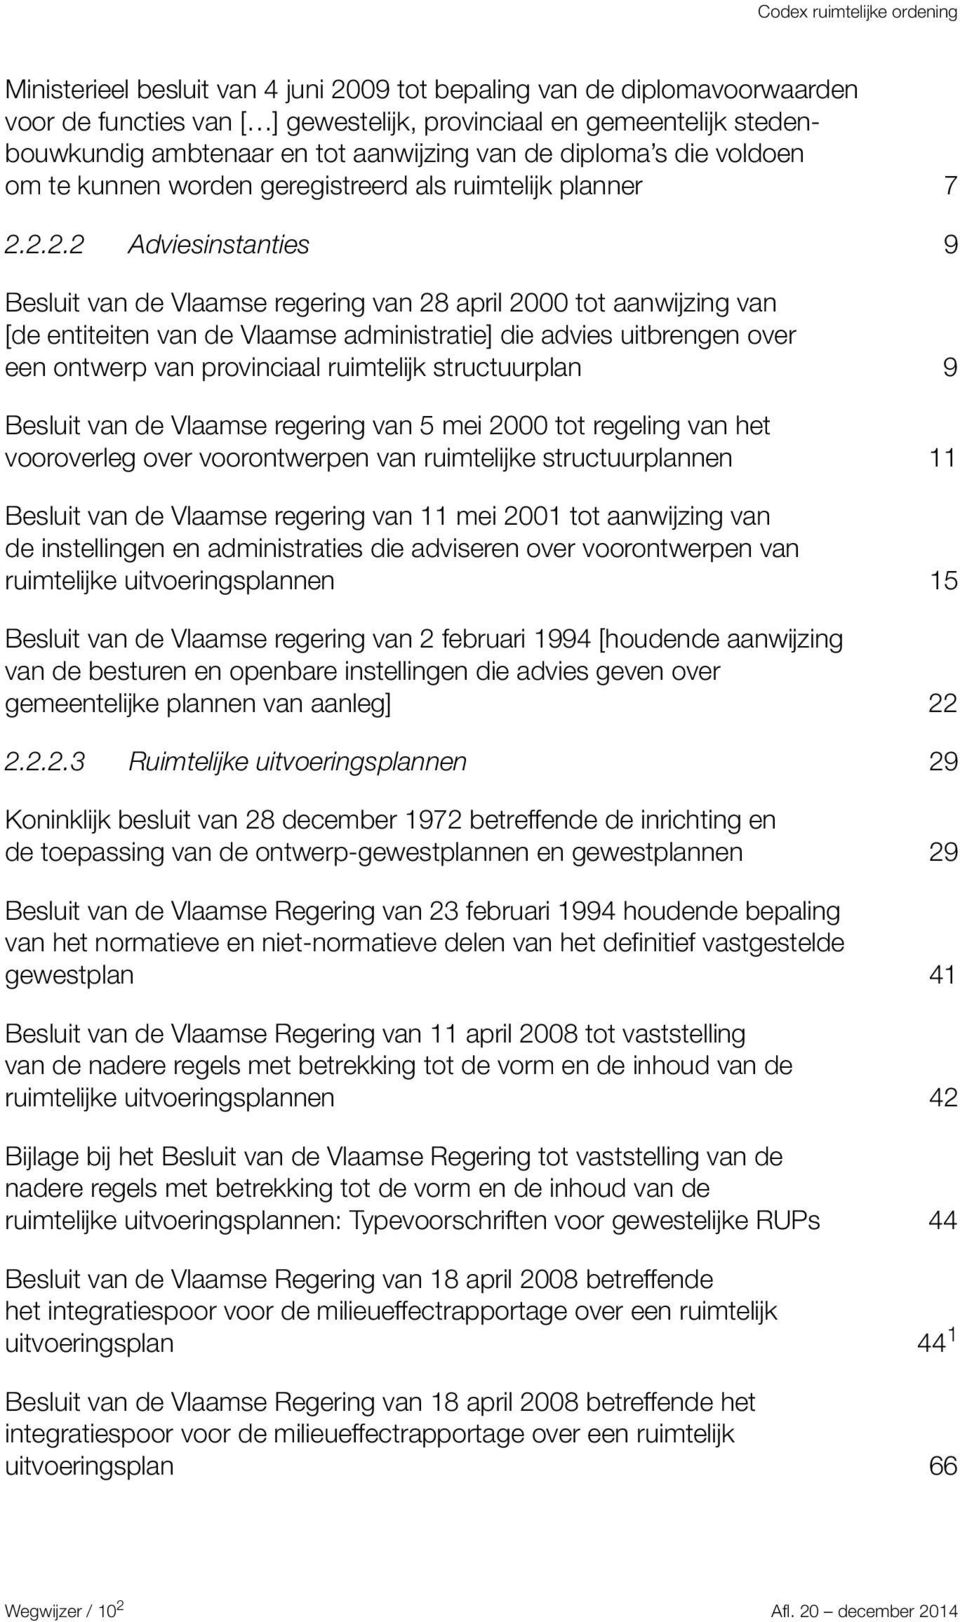 2.2.2 Adviesinstanties 9 Besluit van de Vlaamse regering van 28 april 2000 tot aanwijzing van [de entiteiten van de Vlaamse administratie] die advies uitbrengen over een ontwerp van provinciaal